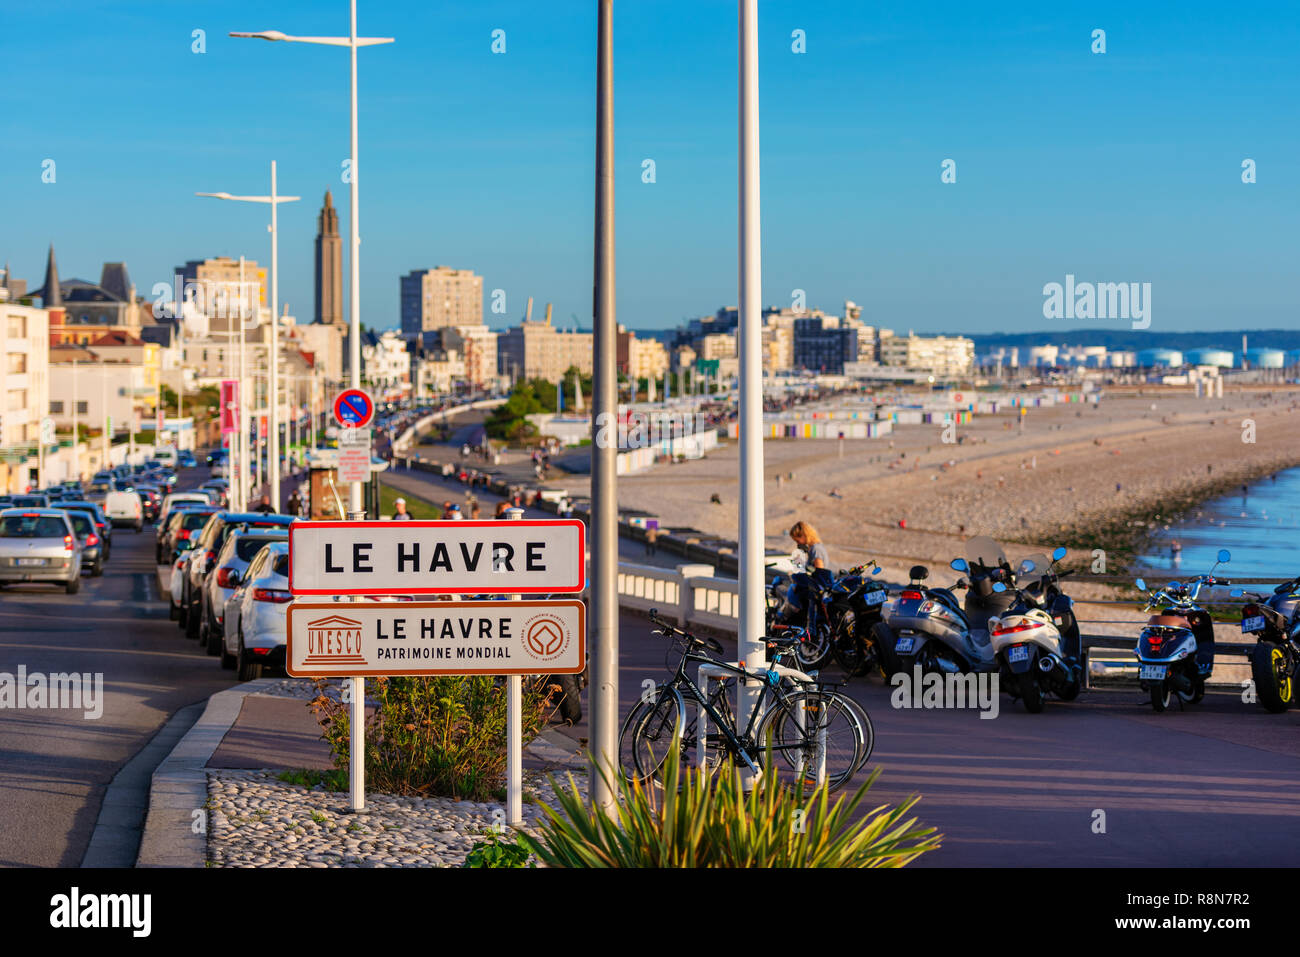 Panneau d'entrée du Havre, Normandie, France. Depuis 2005, le centre-ville du Havre a été déclaré site du patrimoine mondial de l'UNESCO. Banque D'Images